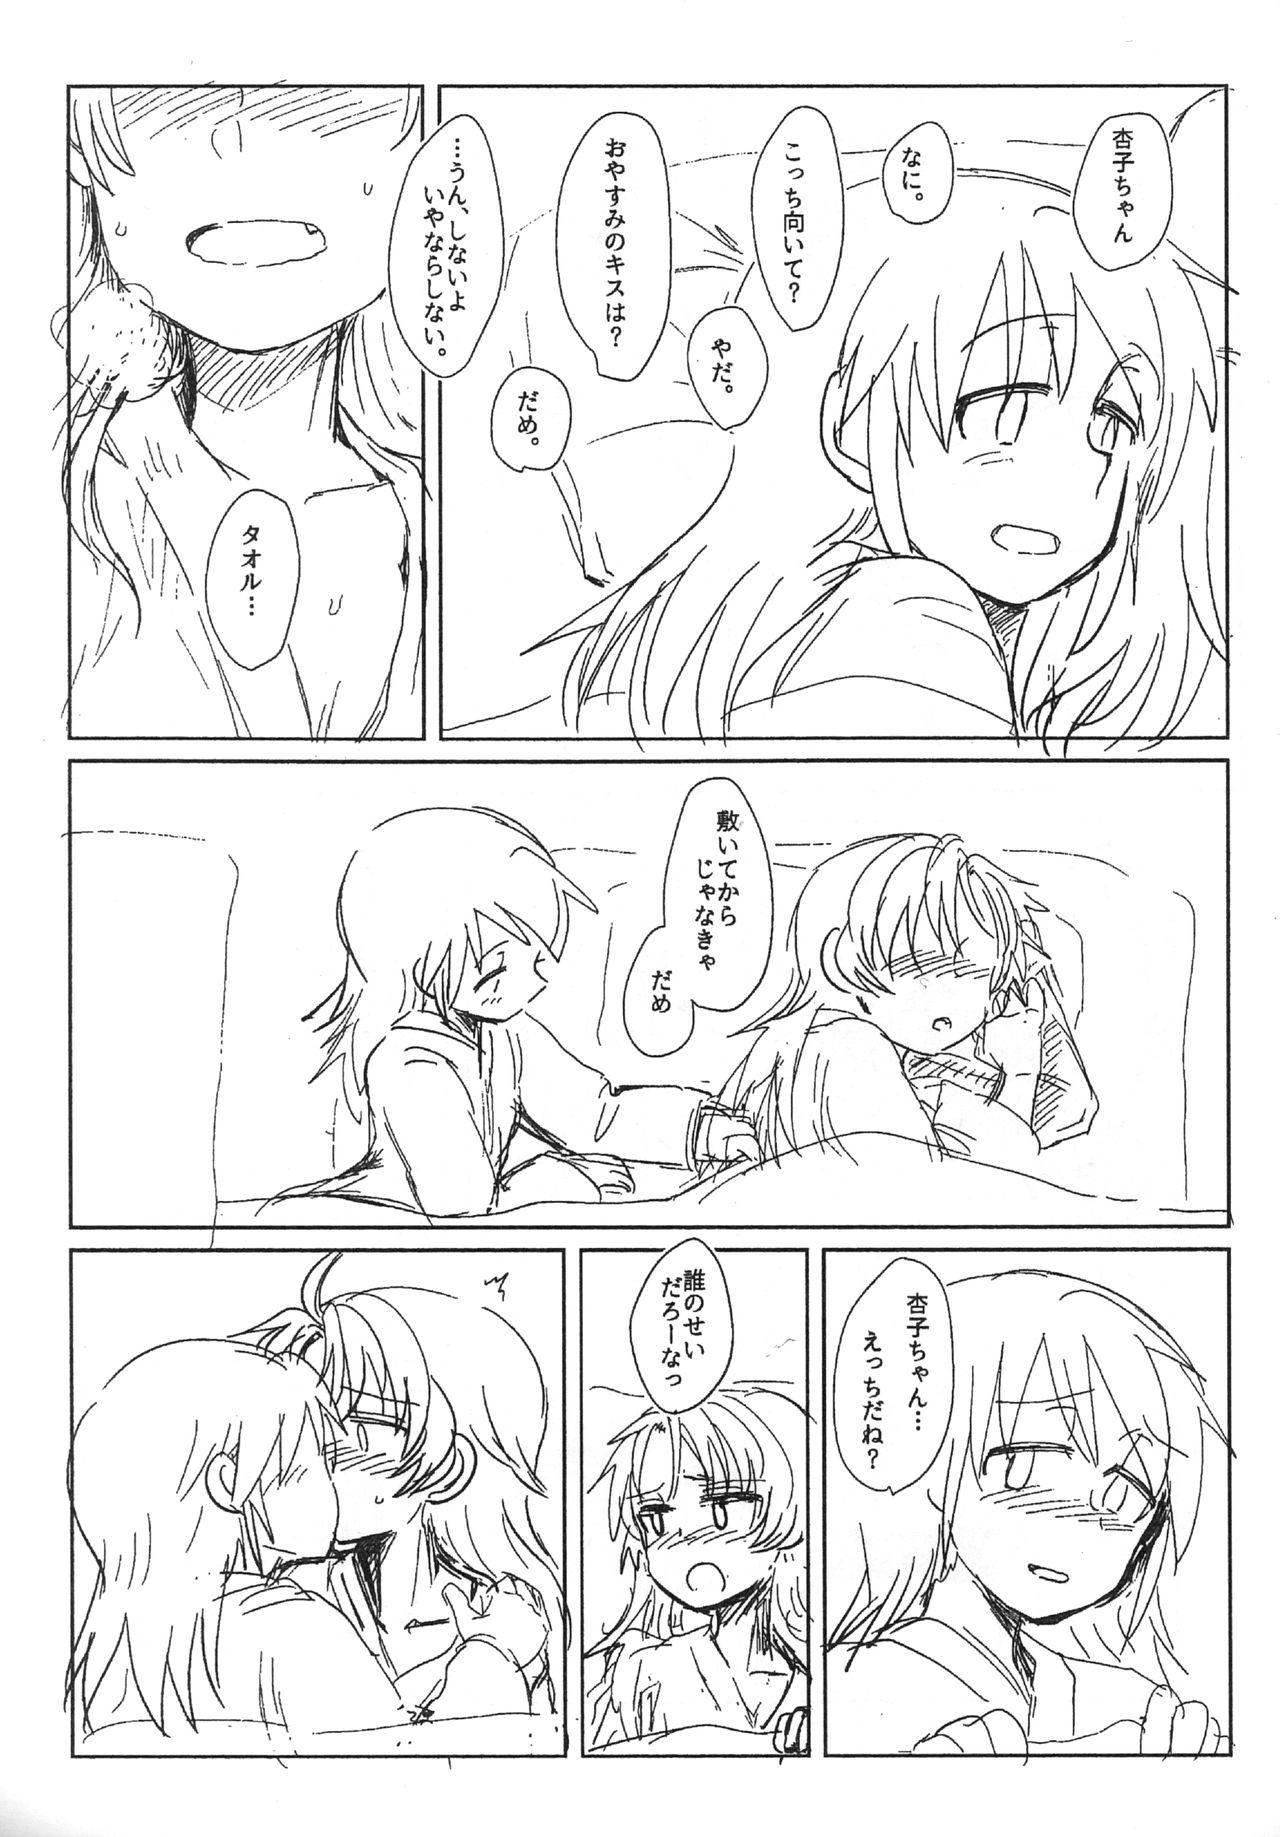 Ftvgirls Sawaranai Kaname VS Sakura-san - Puella magi madoka magica Tall - Page 3